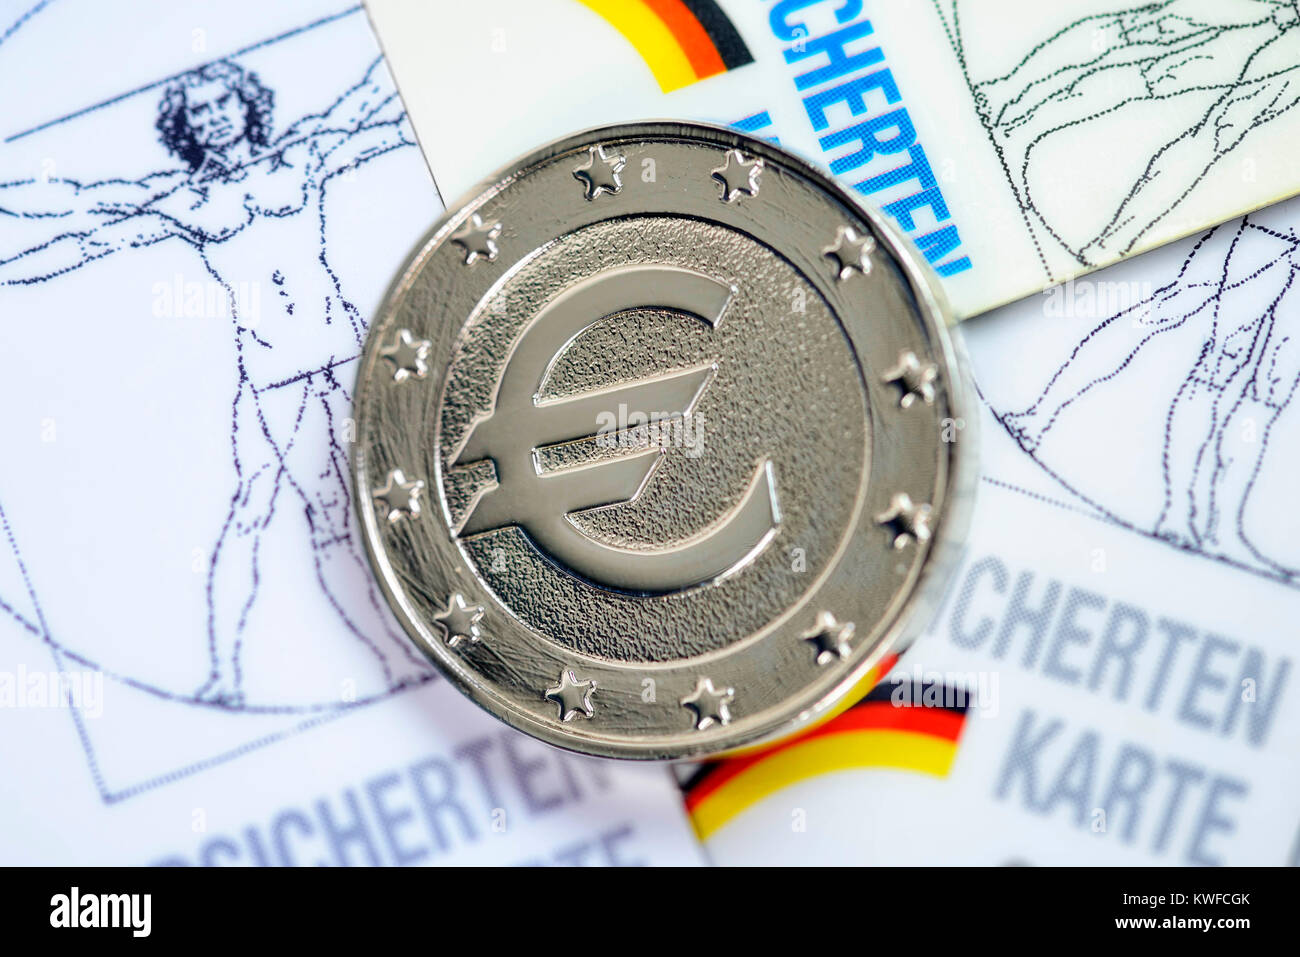 A coin with eurosign on insured person's maps, rise of the health insurance scheme contributions, Eine Muenze mit Eurozeichen auf Versichertenkarten,  Stock Photo